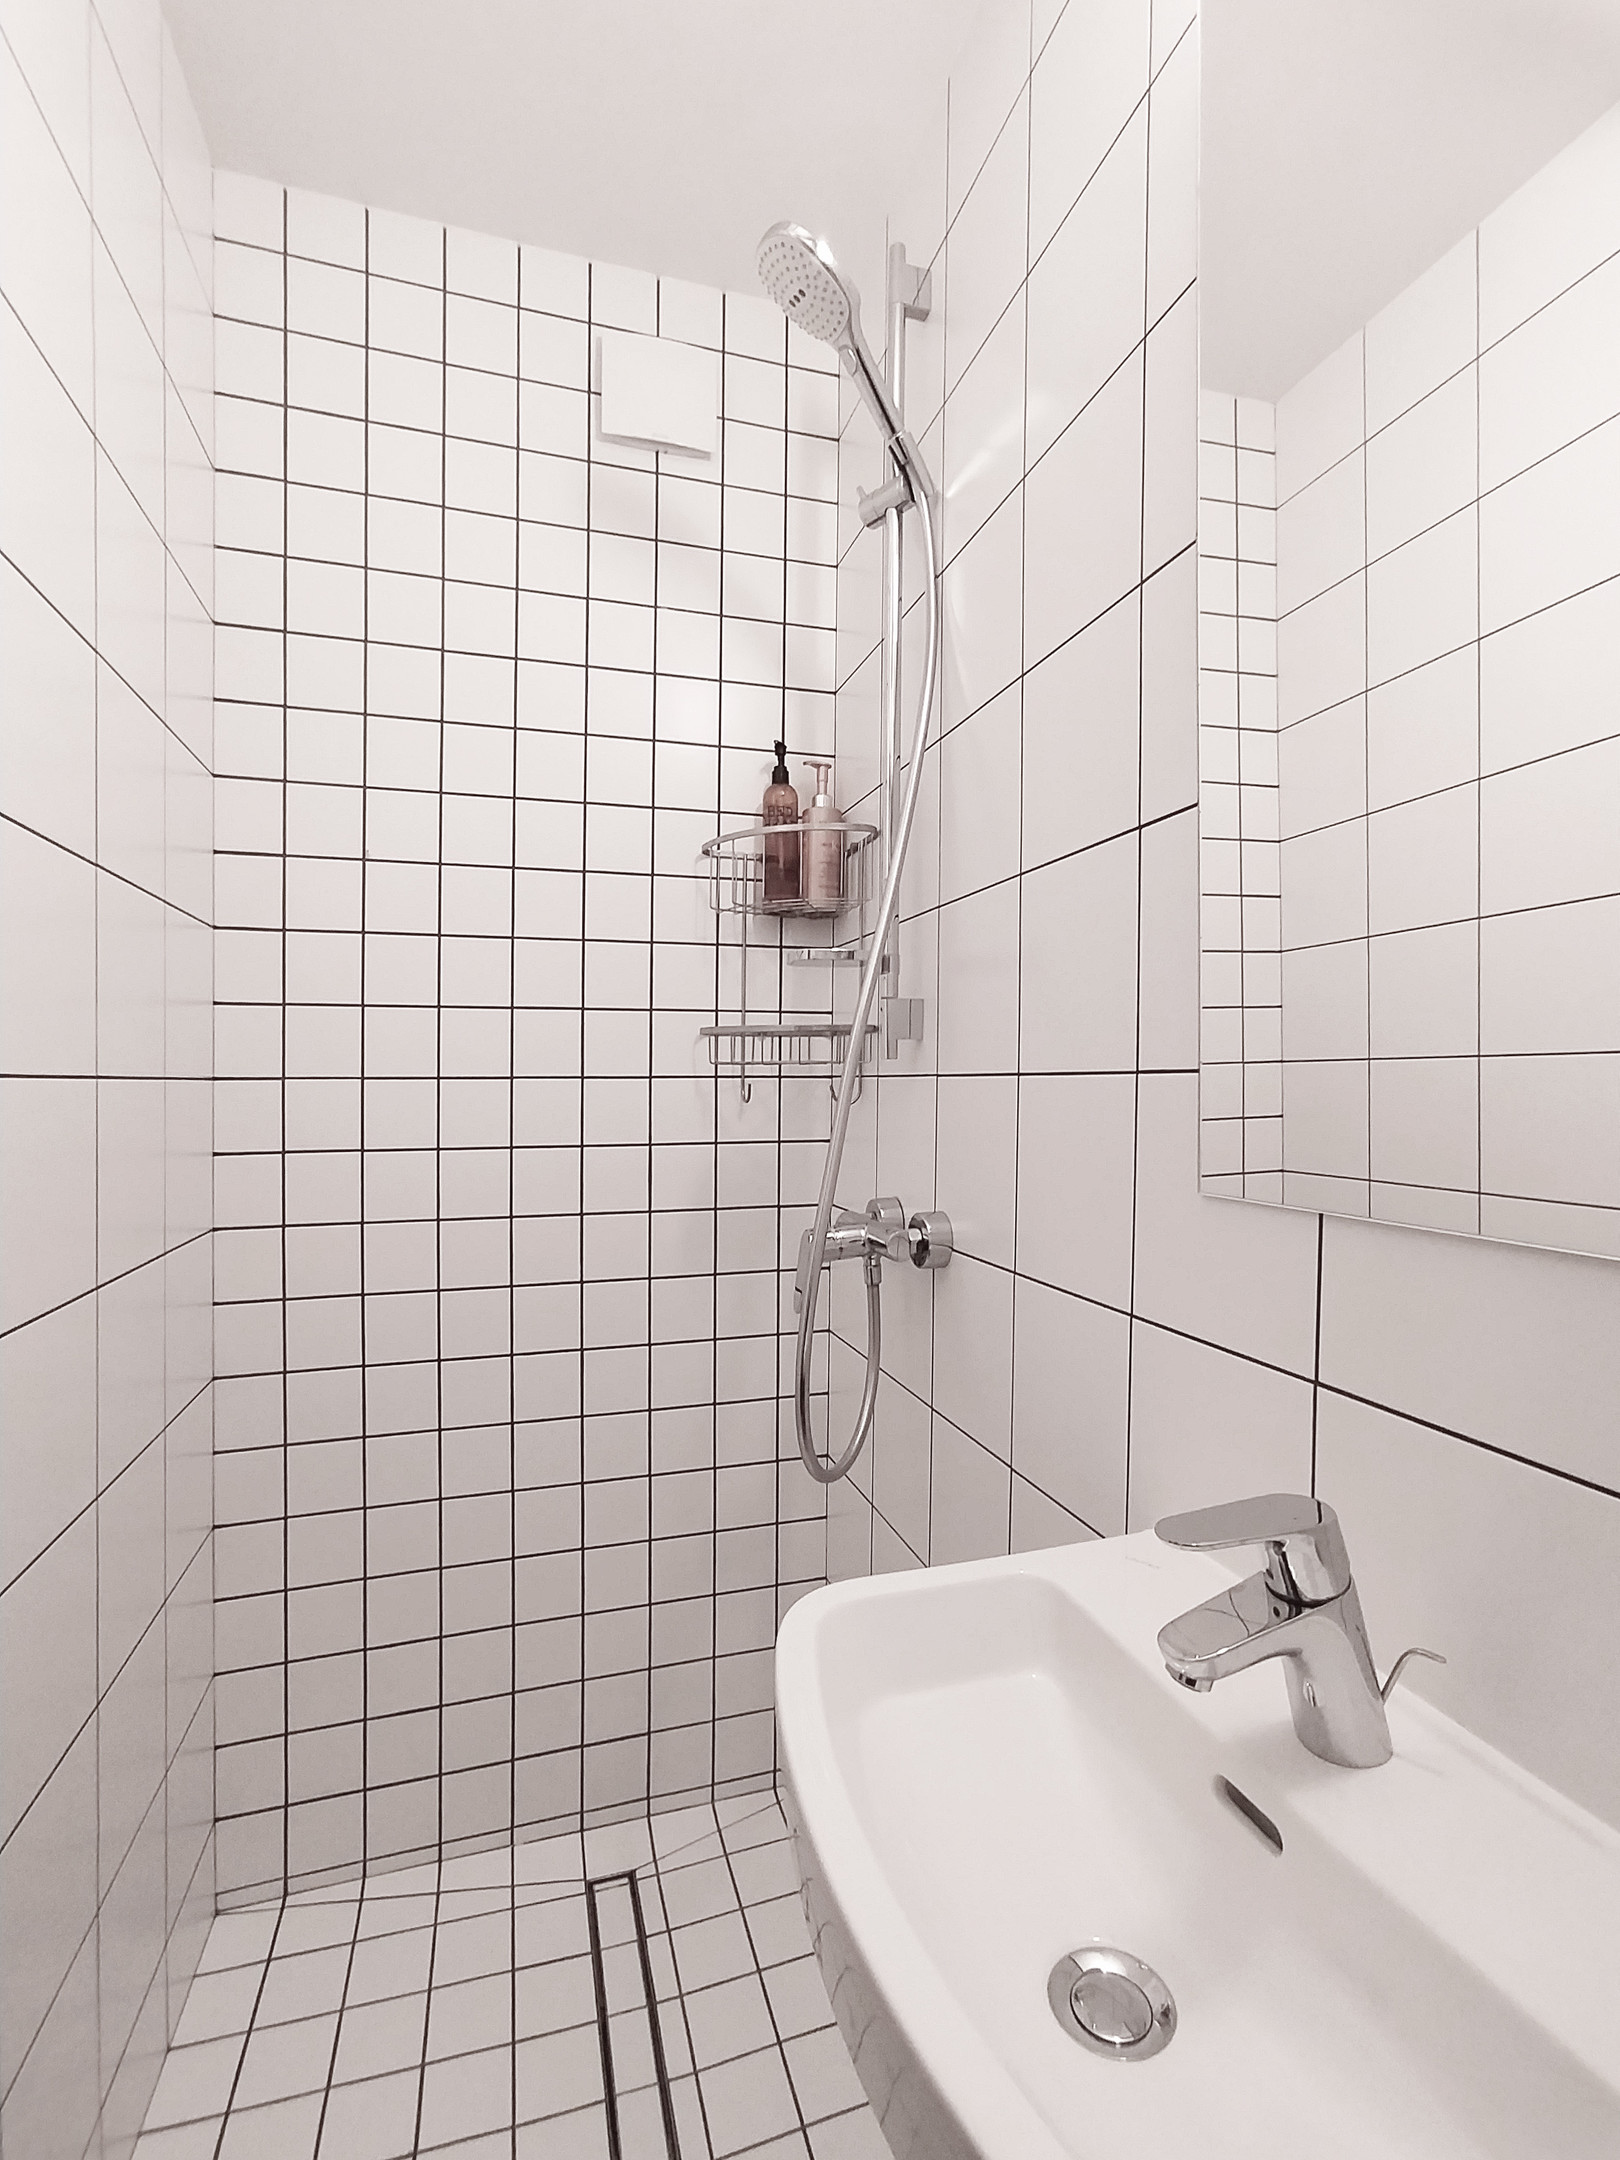 Buồng tắm với những viên gạch vuông kích thước to nhỏ tạo cảm giác sạch sẽ, phân vùng với gạch bông ở toilet. Tủ lưu trữ mặt gương soi giúp phản chiếu hình ảnh và ánh sáng cho phòng tắm nhỏ rộng rãi hơn.